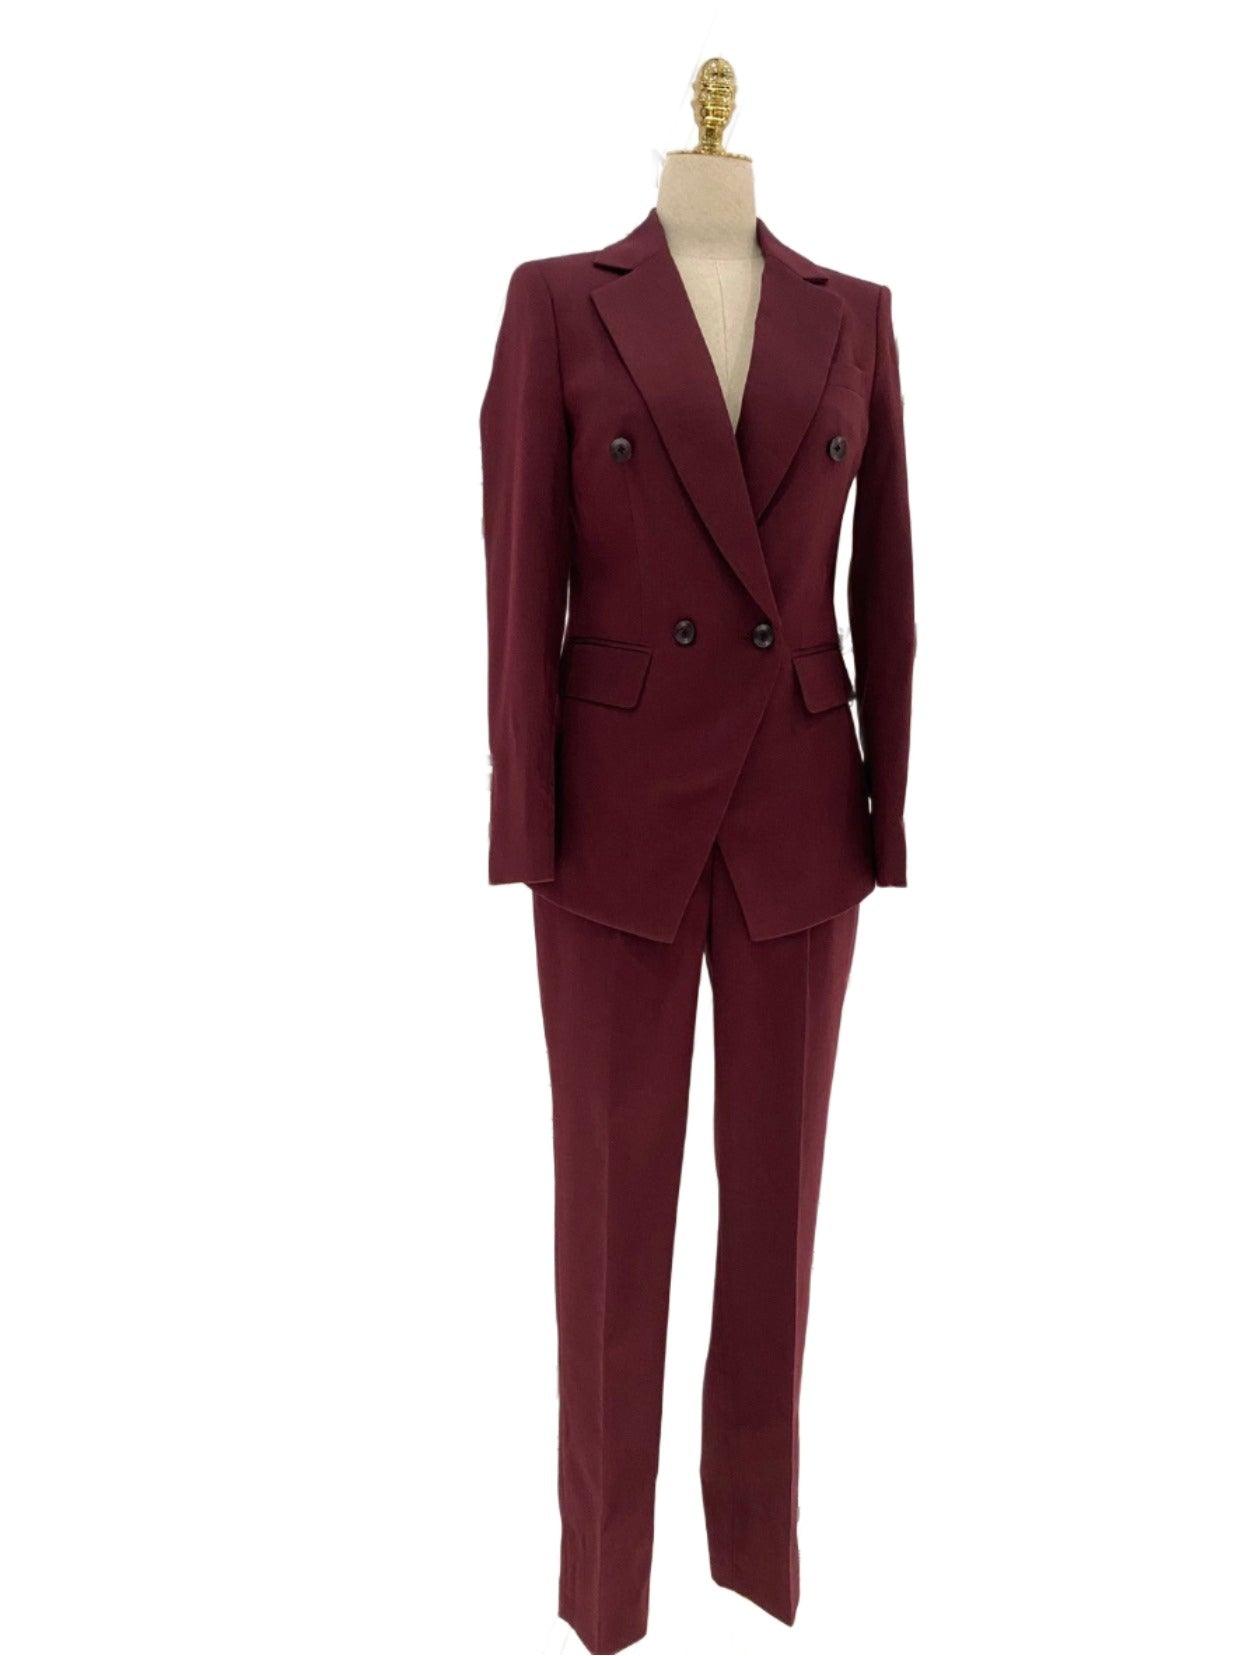 Burgundy Women Pant Suit- Formal Business Trouser Suit - Pantsuit - Guocali